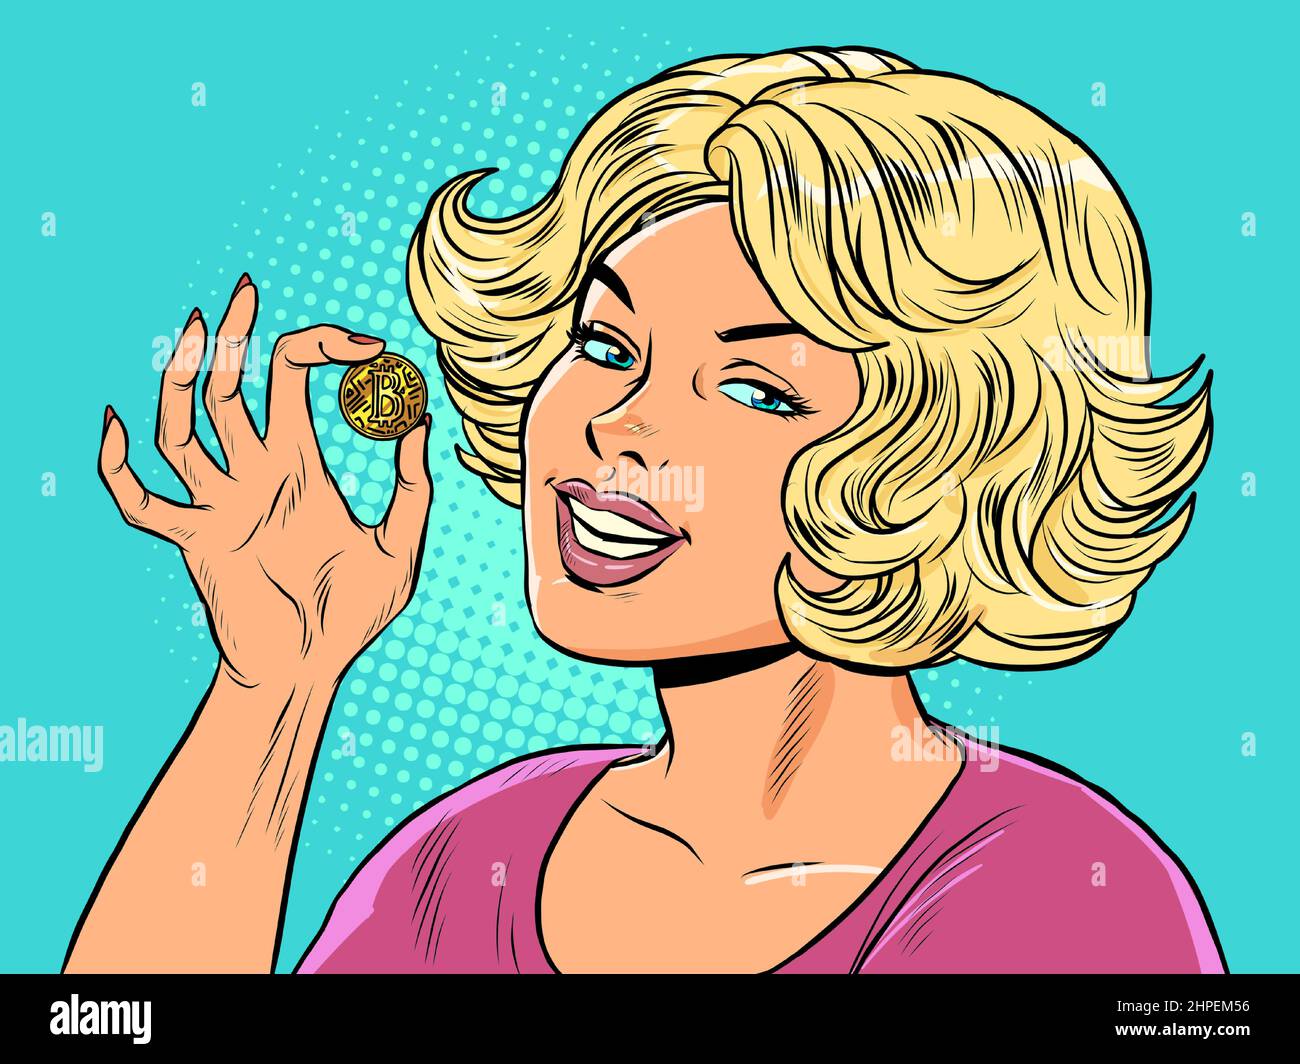 Une fille blonde tient une pièce de bitcoin dans ses mains. Monnaie virtuelle crypto-monnaie Illustration de Vecteur